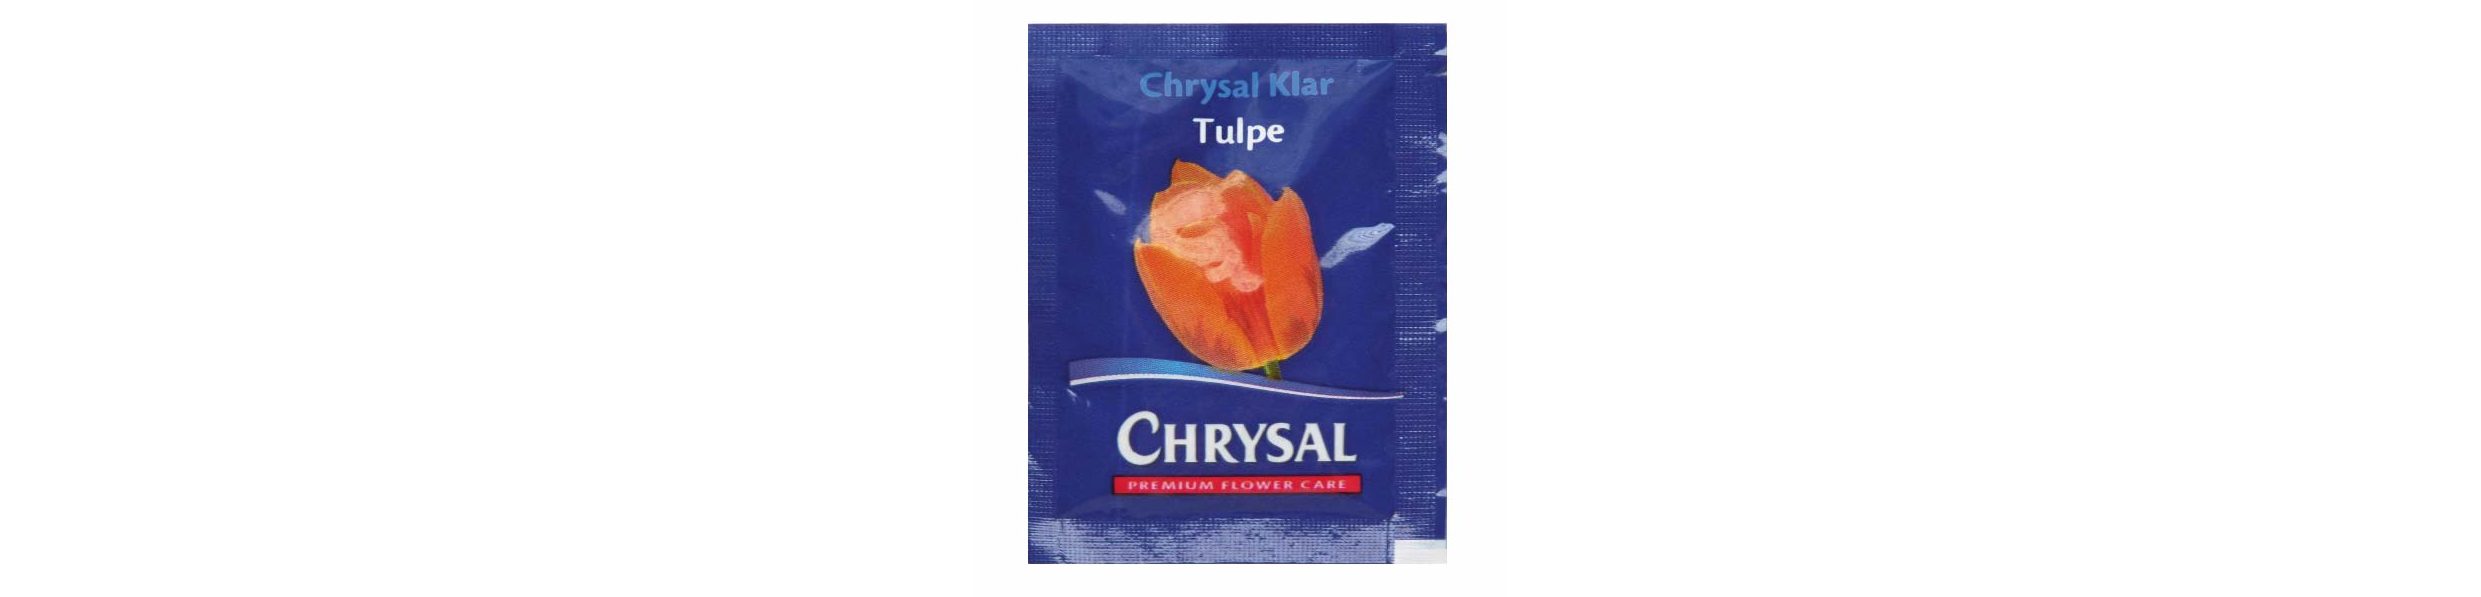 Chrysal Blumenfrisch Tulpe